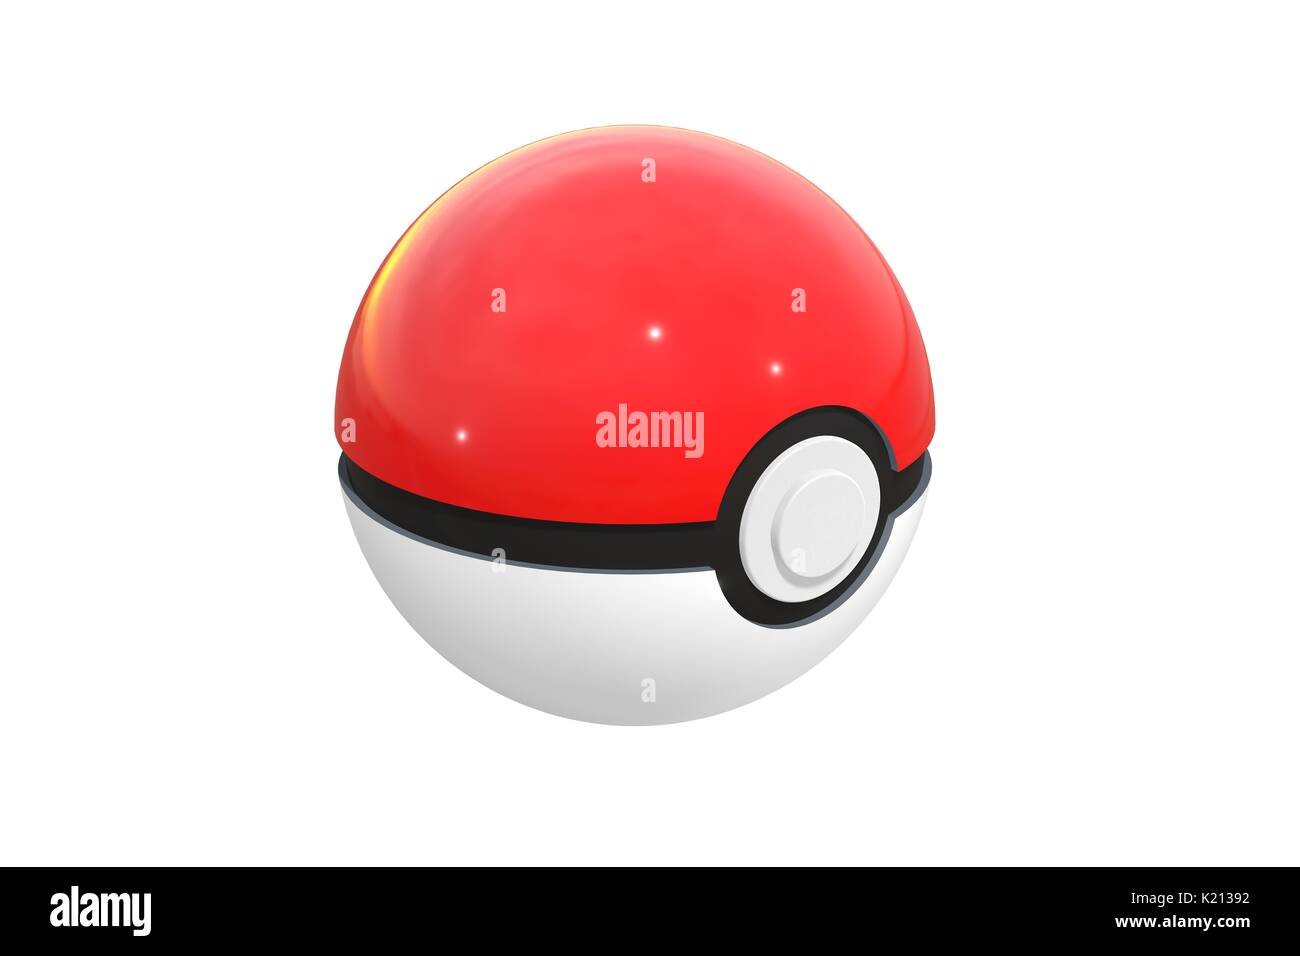 3D render of pokéball isolé sur un fond blanc. Pokéball est un équipement d'attraper de Pokemon Rendez-vous, le plus réussi du jeu de réalité augmentée. Banque D'Images